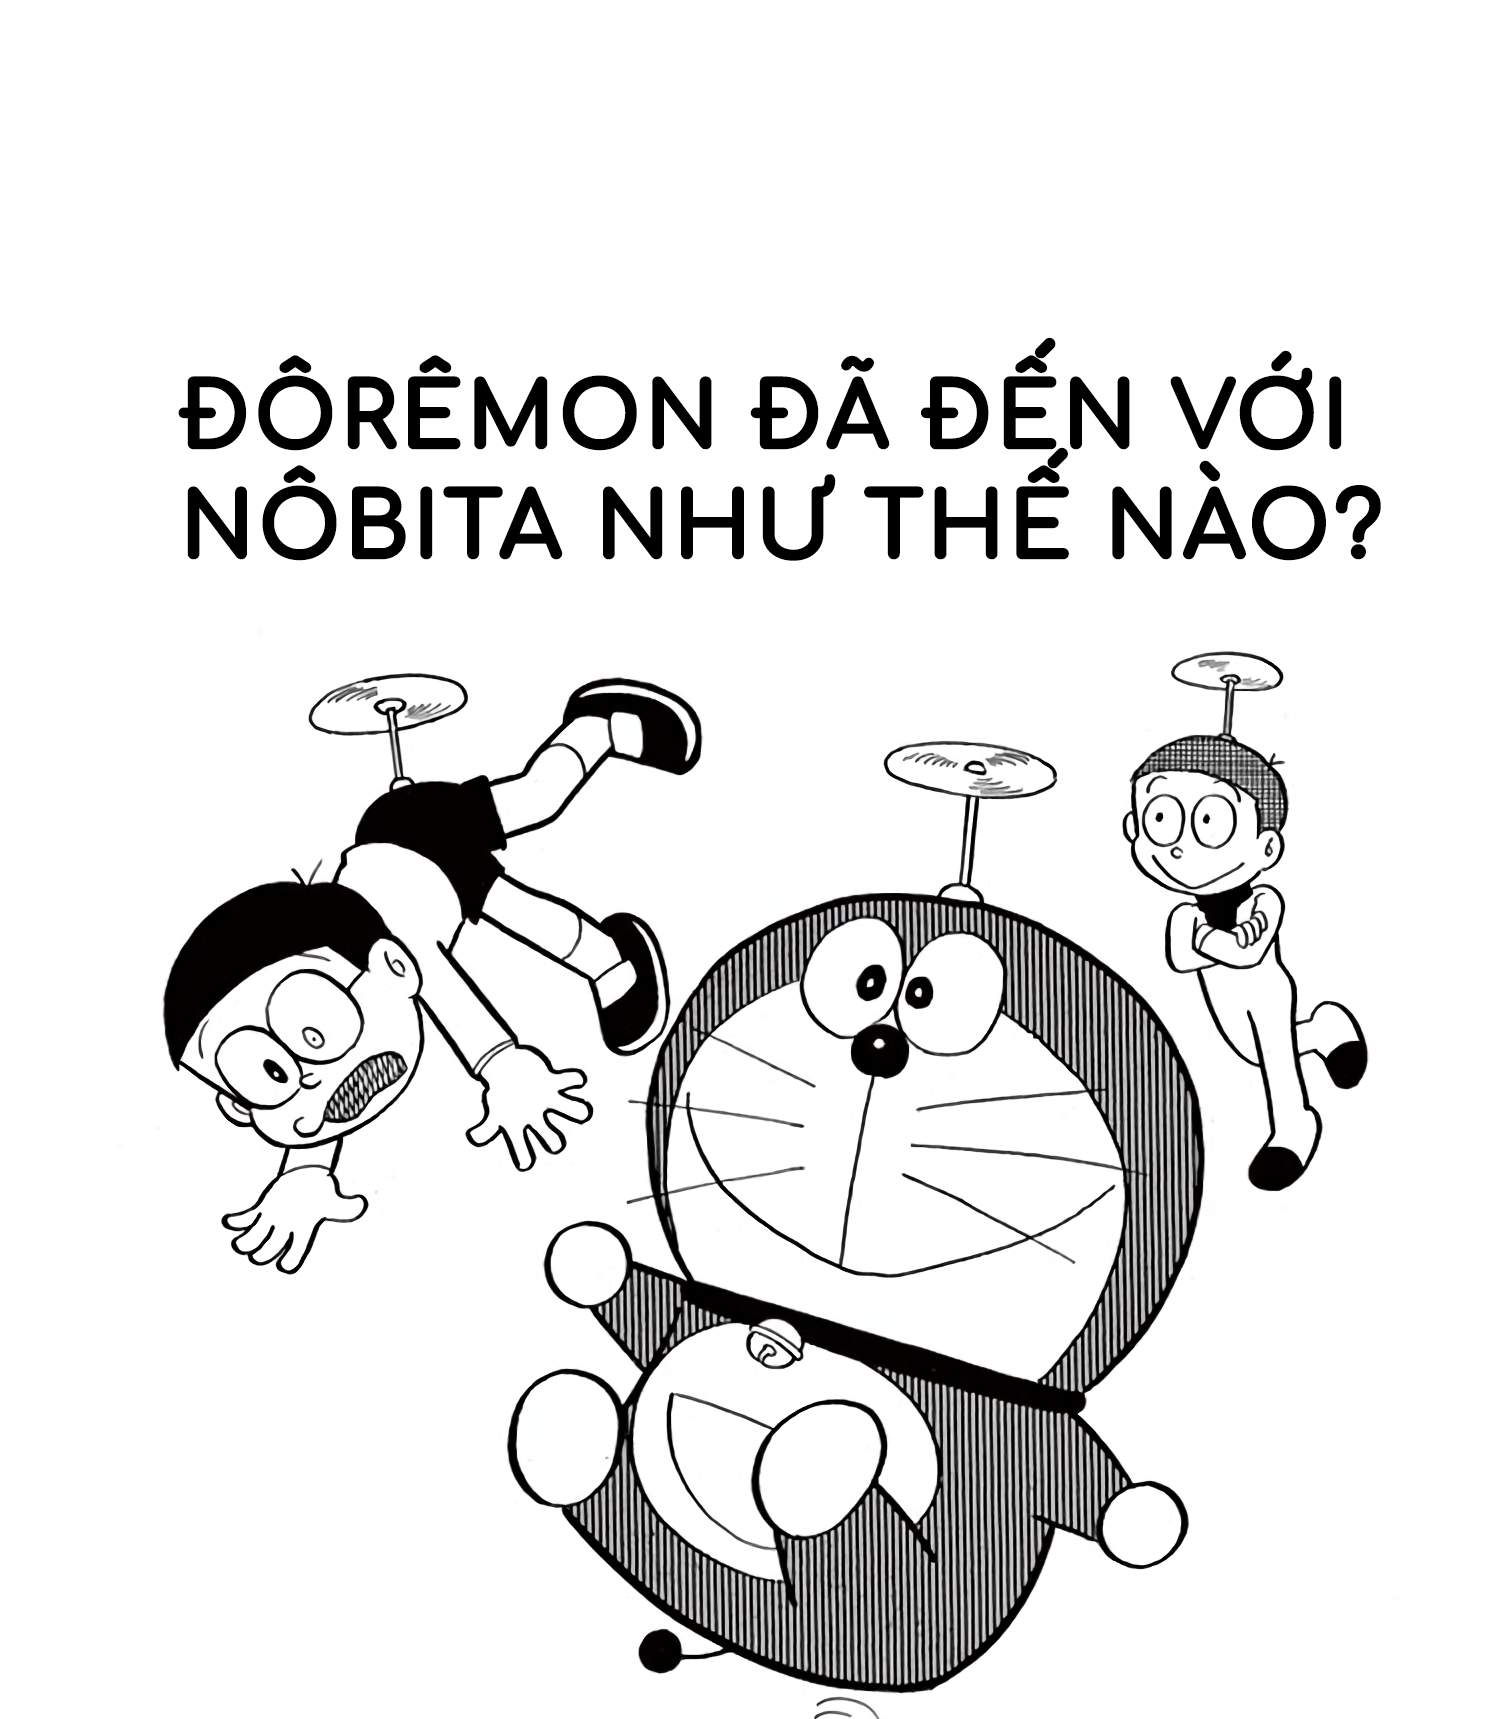 Bạn đã từng mơ về một người bạn đến từ tương lai? Hãy cùng xem hình ảnh những cuộc phiêu lưu của Doraemon - người bạn đến từ tương lai đáng yêu và thông minh nhất.